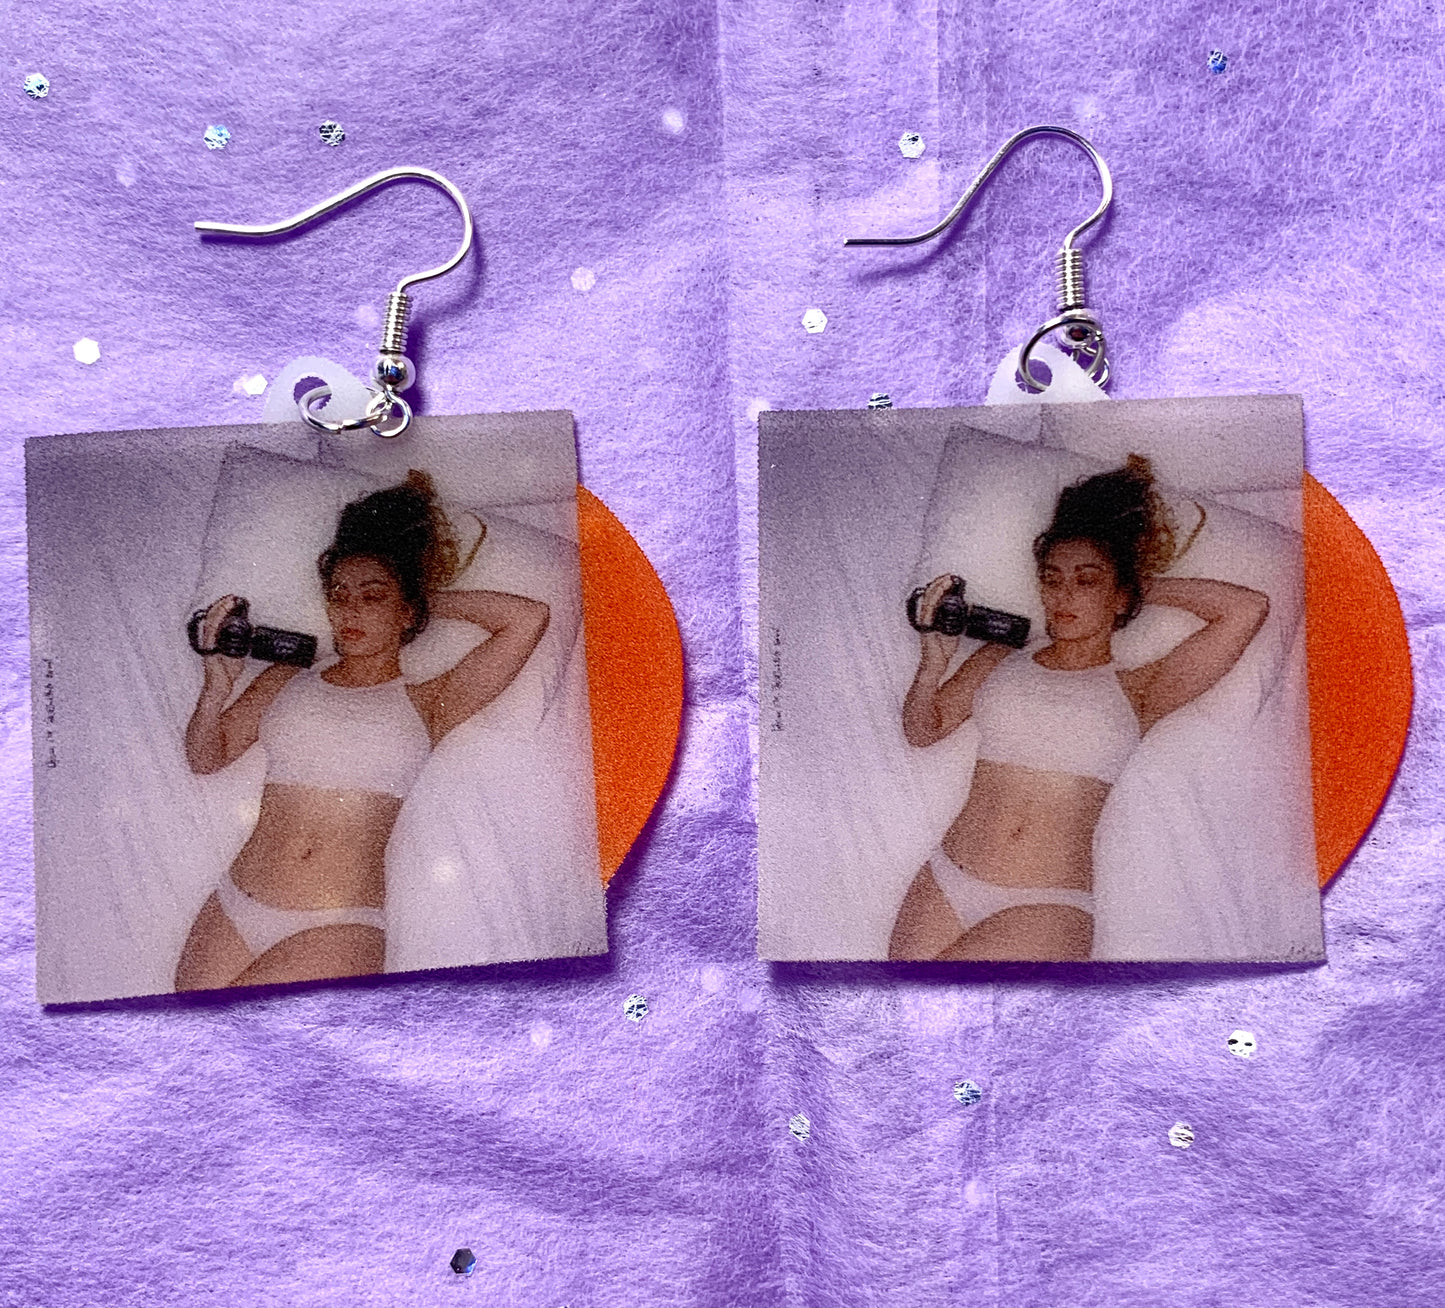 Charli XCX How I'm Feeling Now Vinyl Album Handmade Earrings!